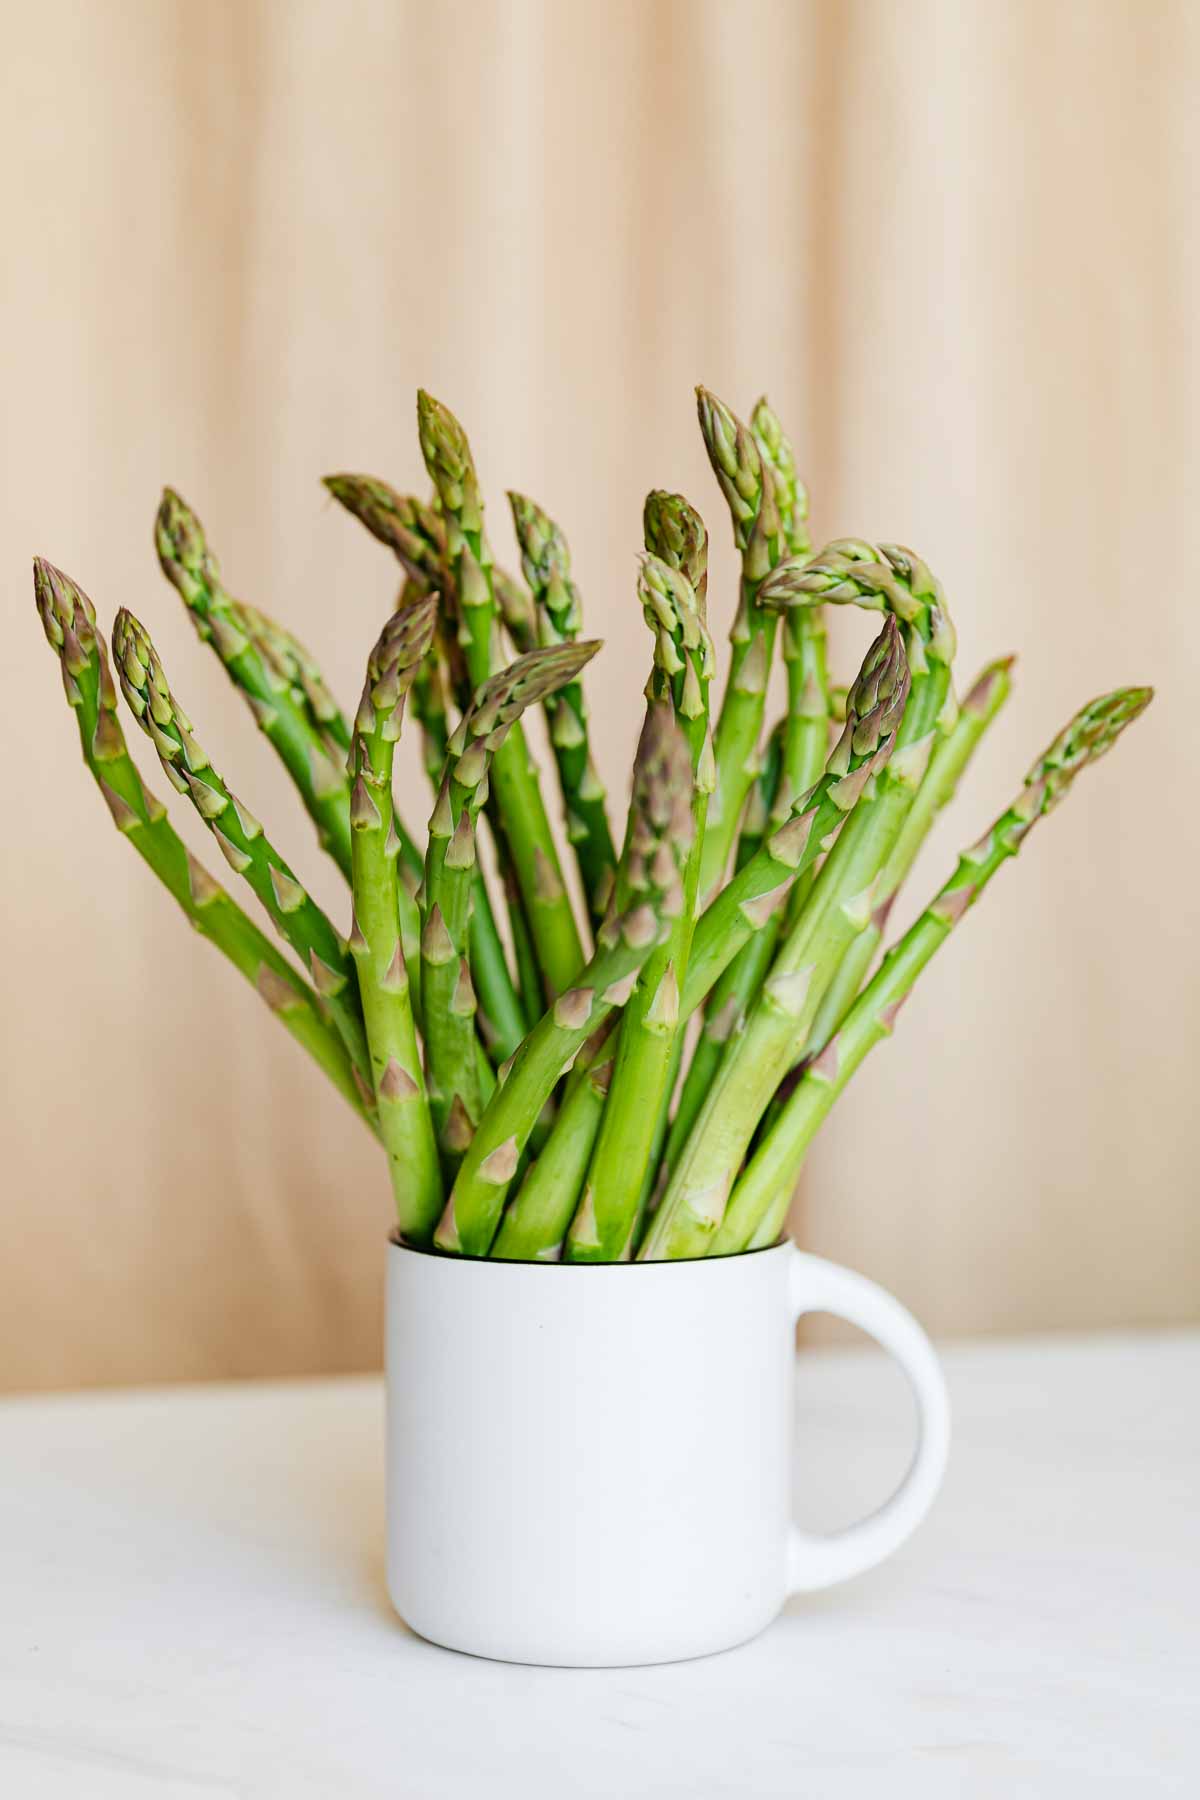 Fresh asparagus pieces in a white mug.